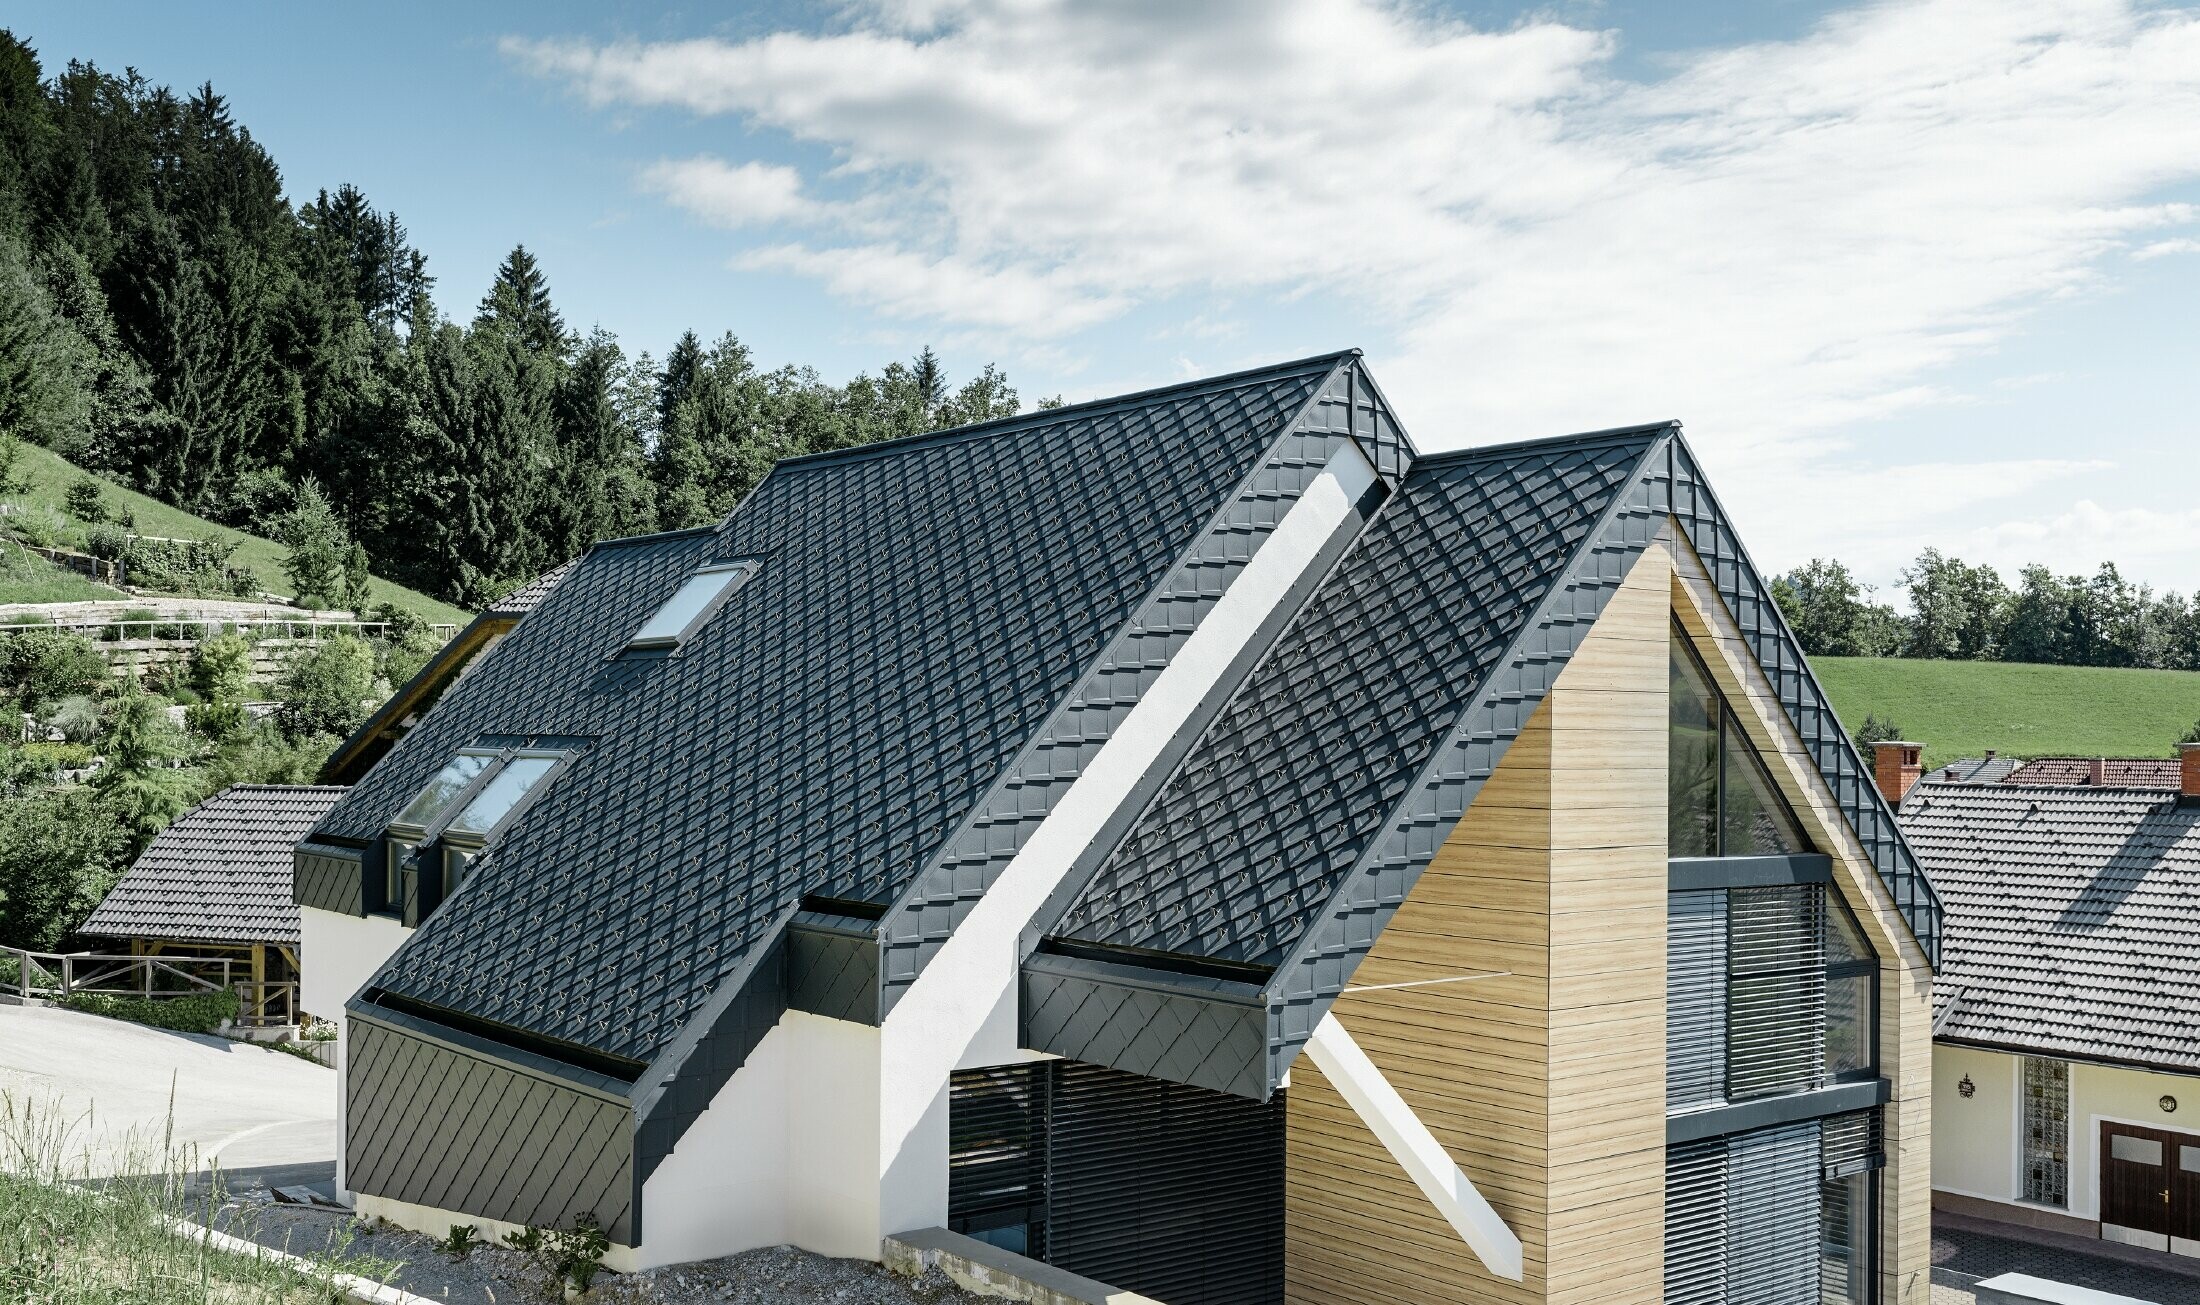 Enodružinska hiša z dvokapno streho brez strešnega napušča s fasado v videzu lesa in aluminijasto streho v antracitni barvi.